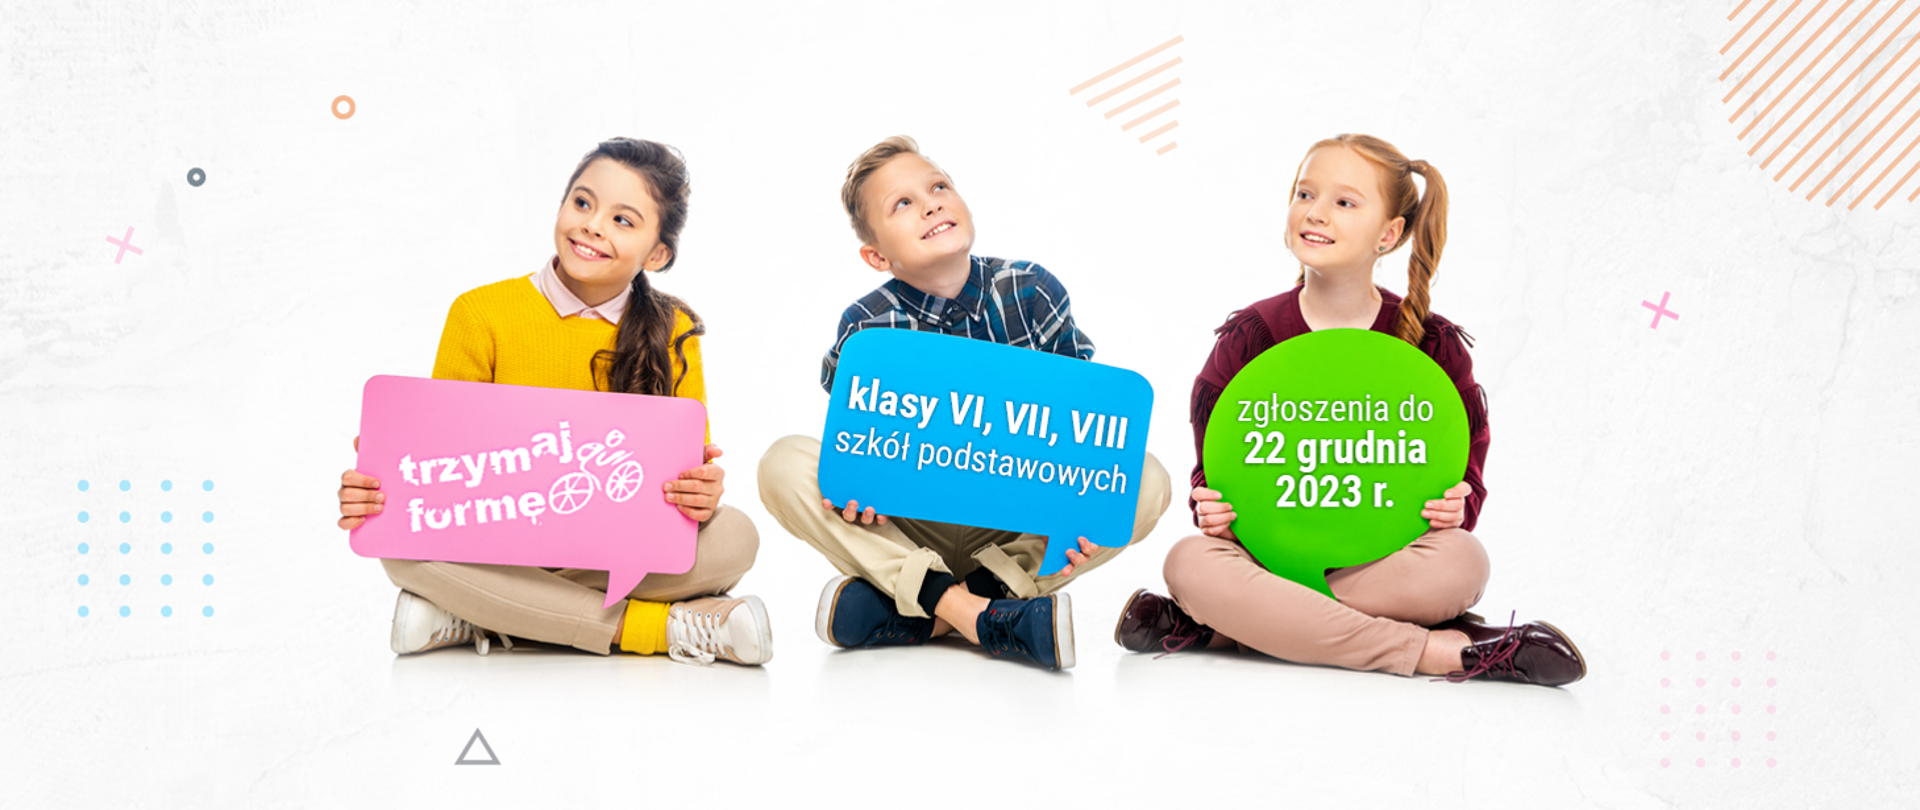 Na zdjęciu po turecku siedzą dwie dziewczynki i chłopiec. Dziewczynka z lewej trzyma w rękach kartkę z napisem trzymaj formę. Chłopiec siedzący w środku trzyma kartkę z napisem klasy VI, VII i VIII szkół podstawowych. Dziewczynka po prawej trzyma kartkę z napisem zgłoszenia do 22 grudnia 2023 r.